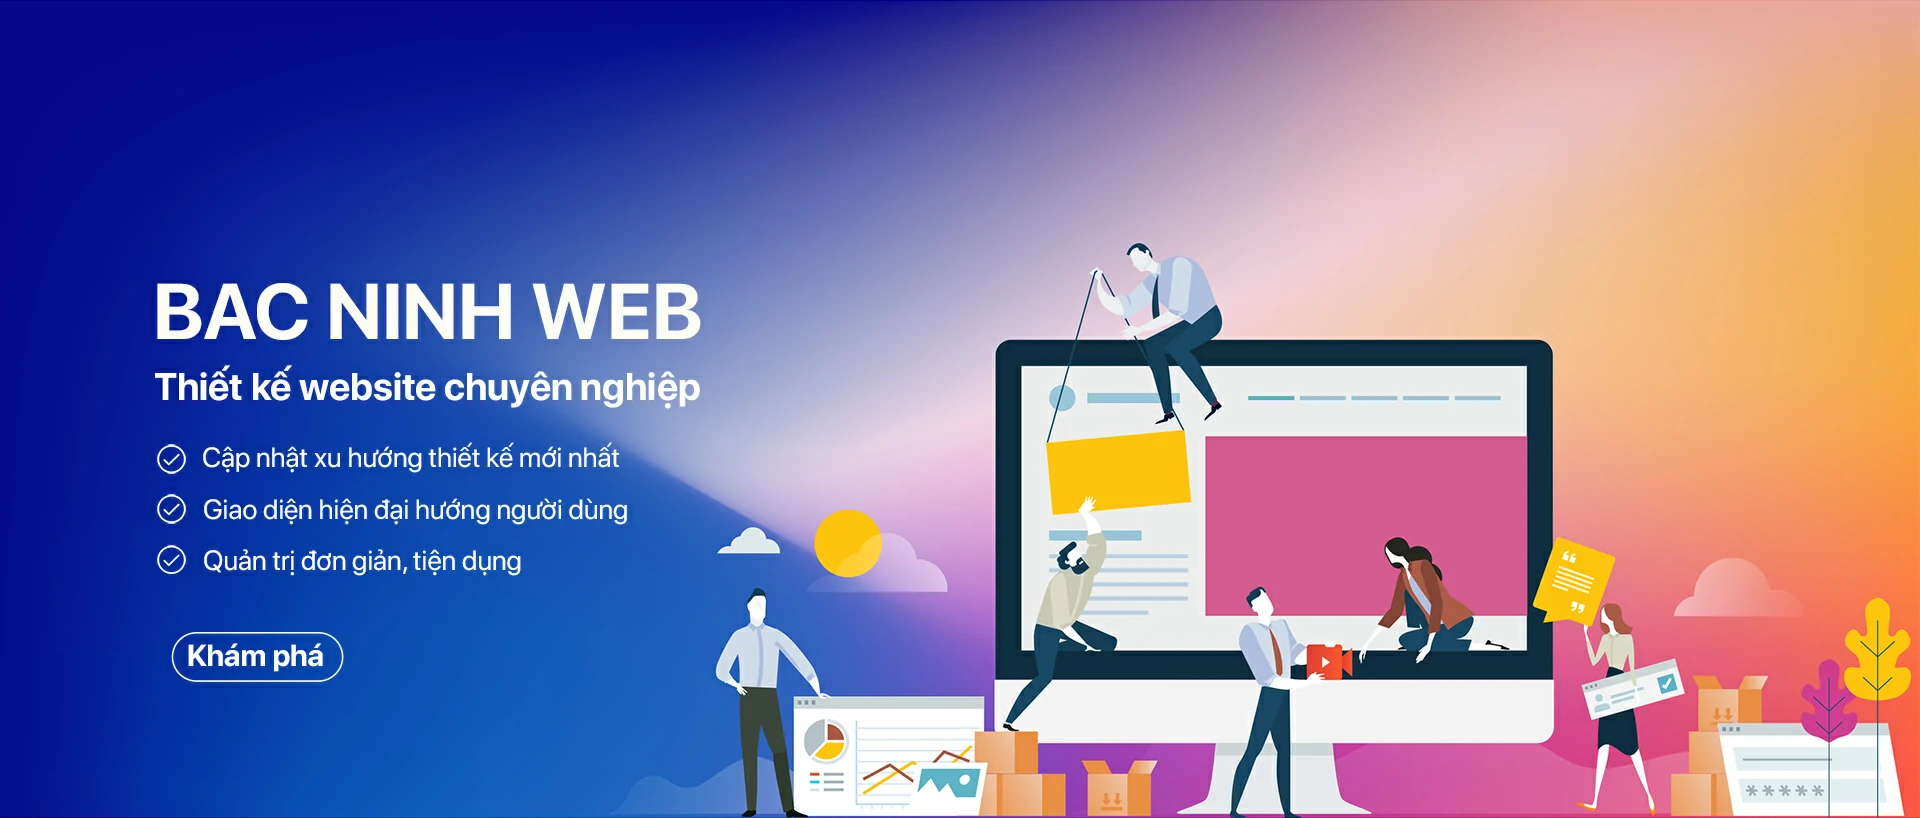 Thiết kế website Bắc Ninh